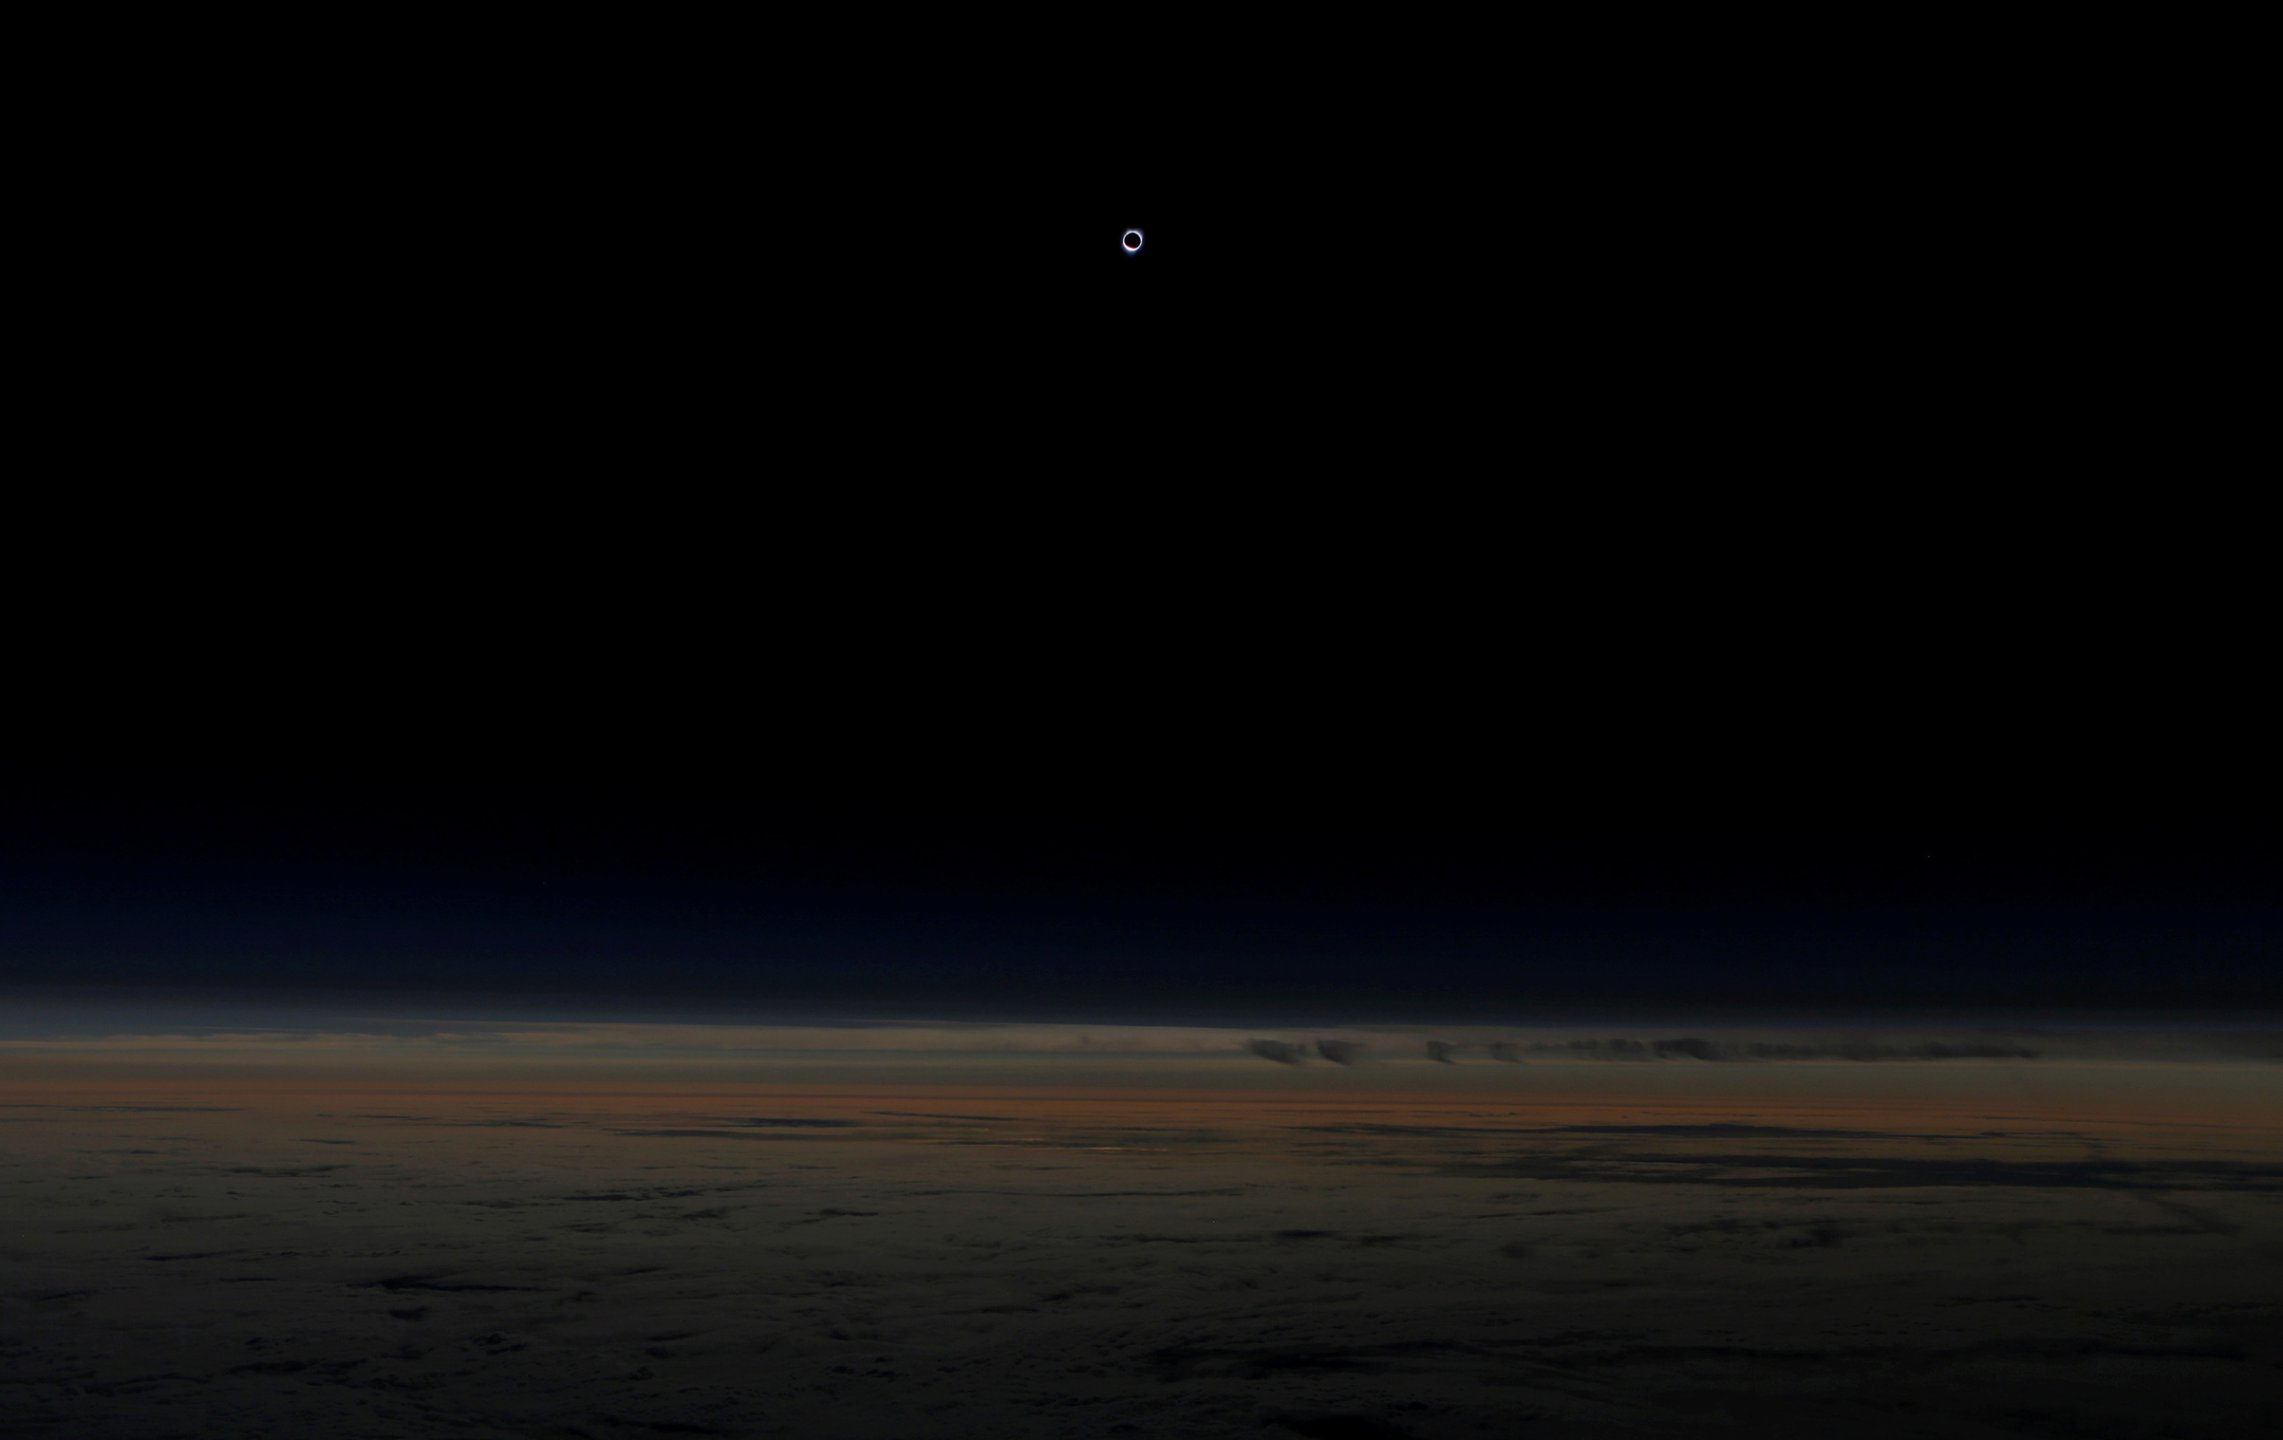 Солнце, полностью закрытое луной, во время затмения. Снимок сделан на высоте более 12 км из самолета авиакомпании Alaska Airlines